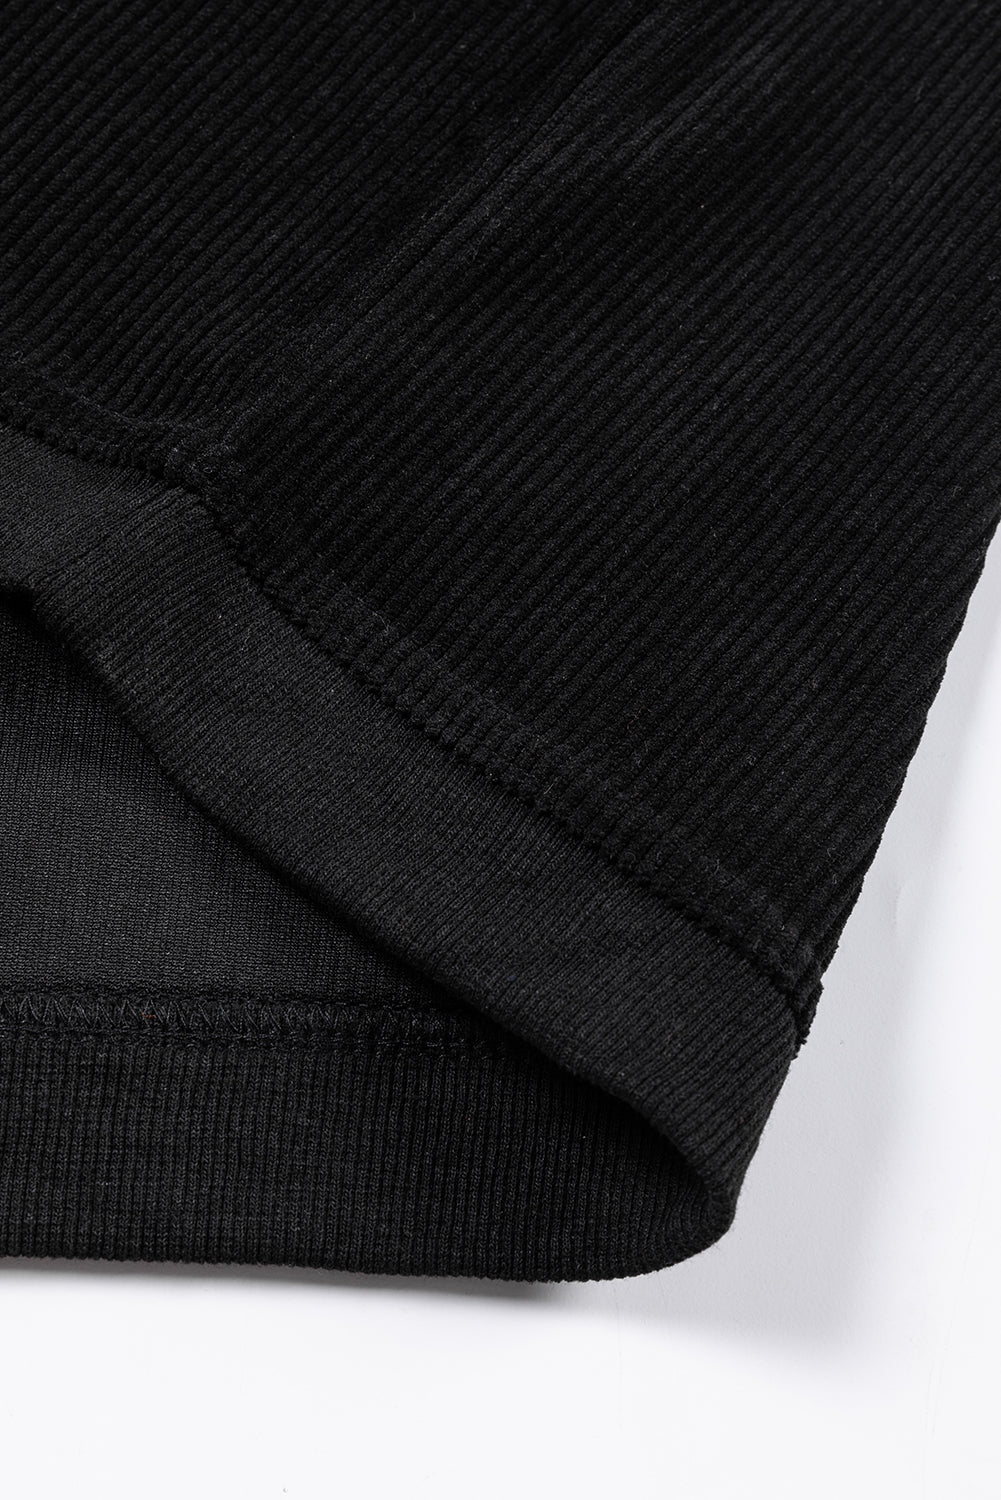 Črn rebrast pulover z vrvicami